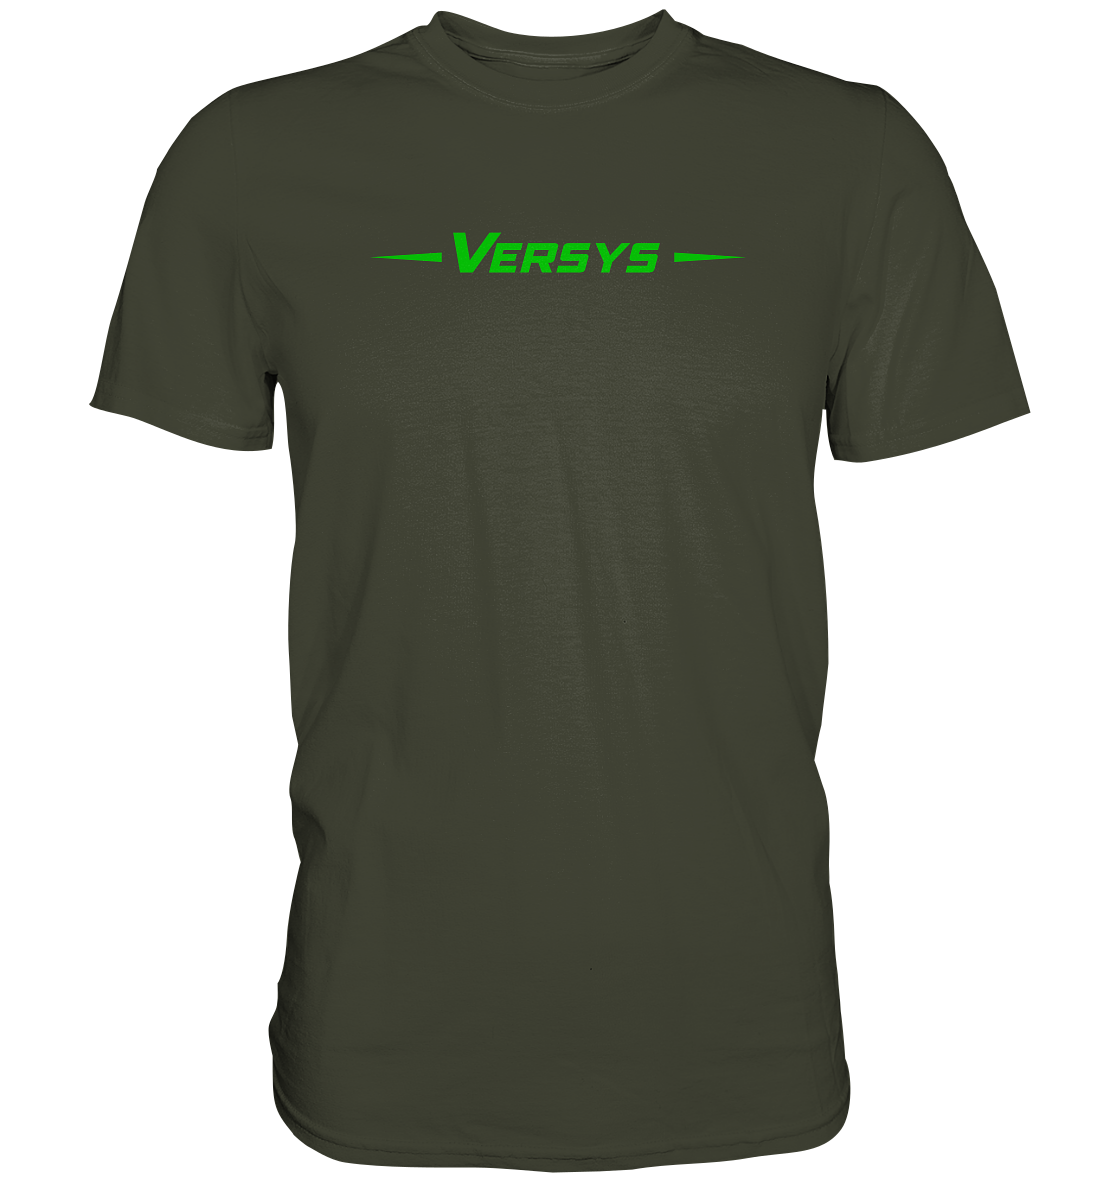 Versys - Premium unisex Shirt - helle und dunkle shirts